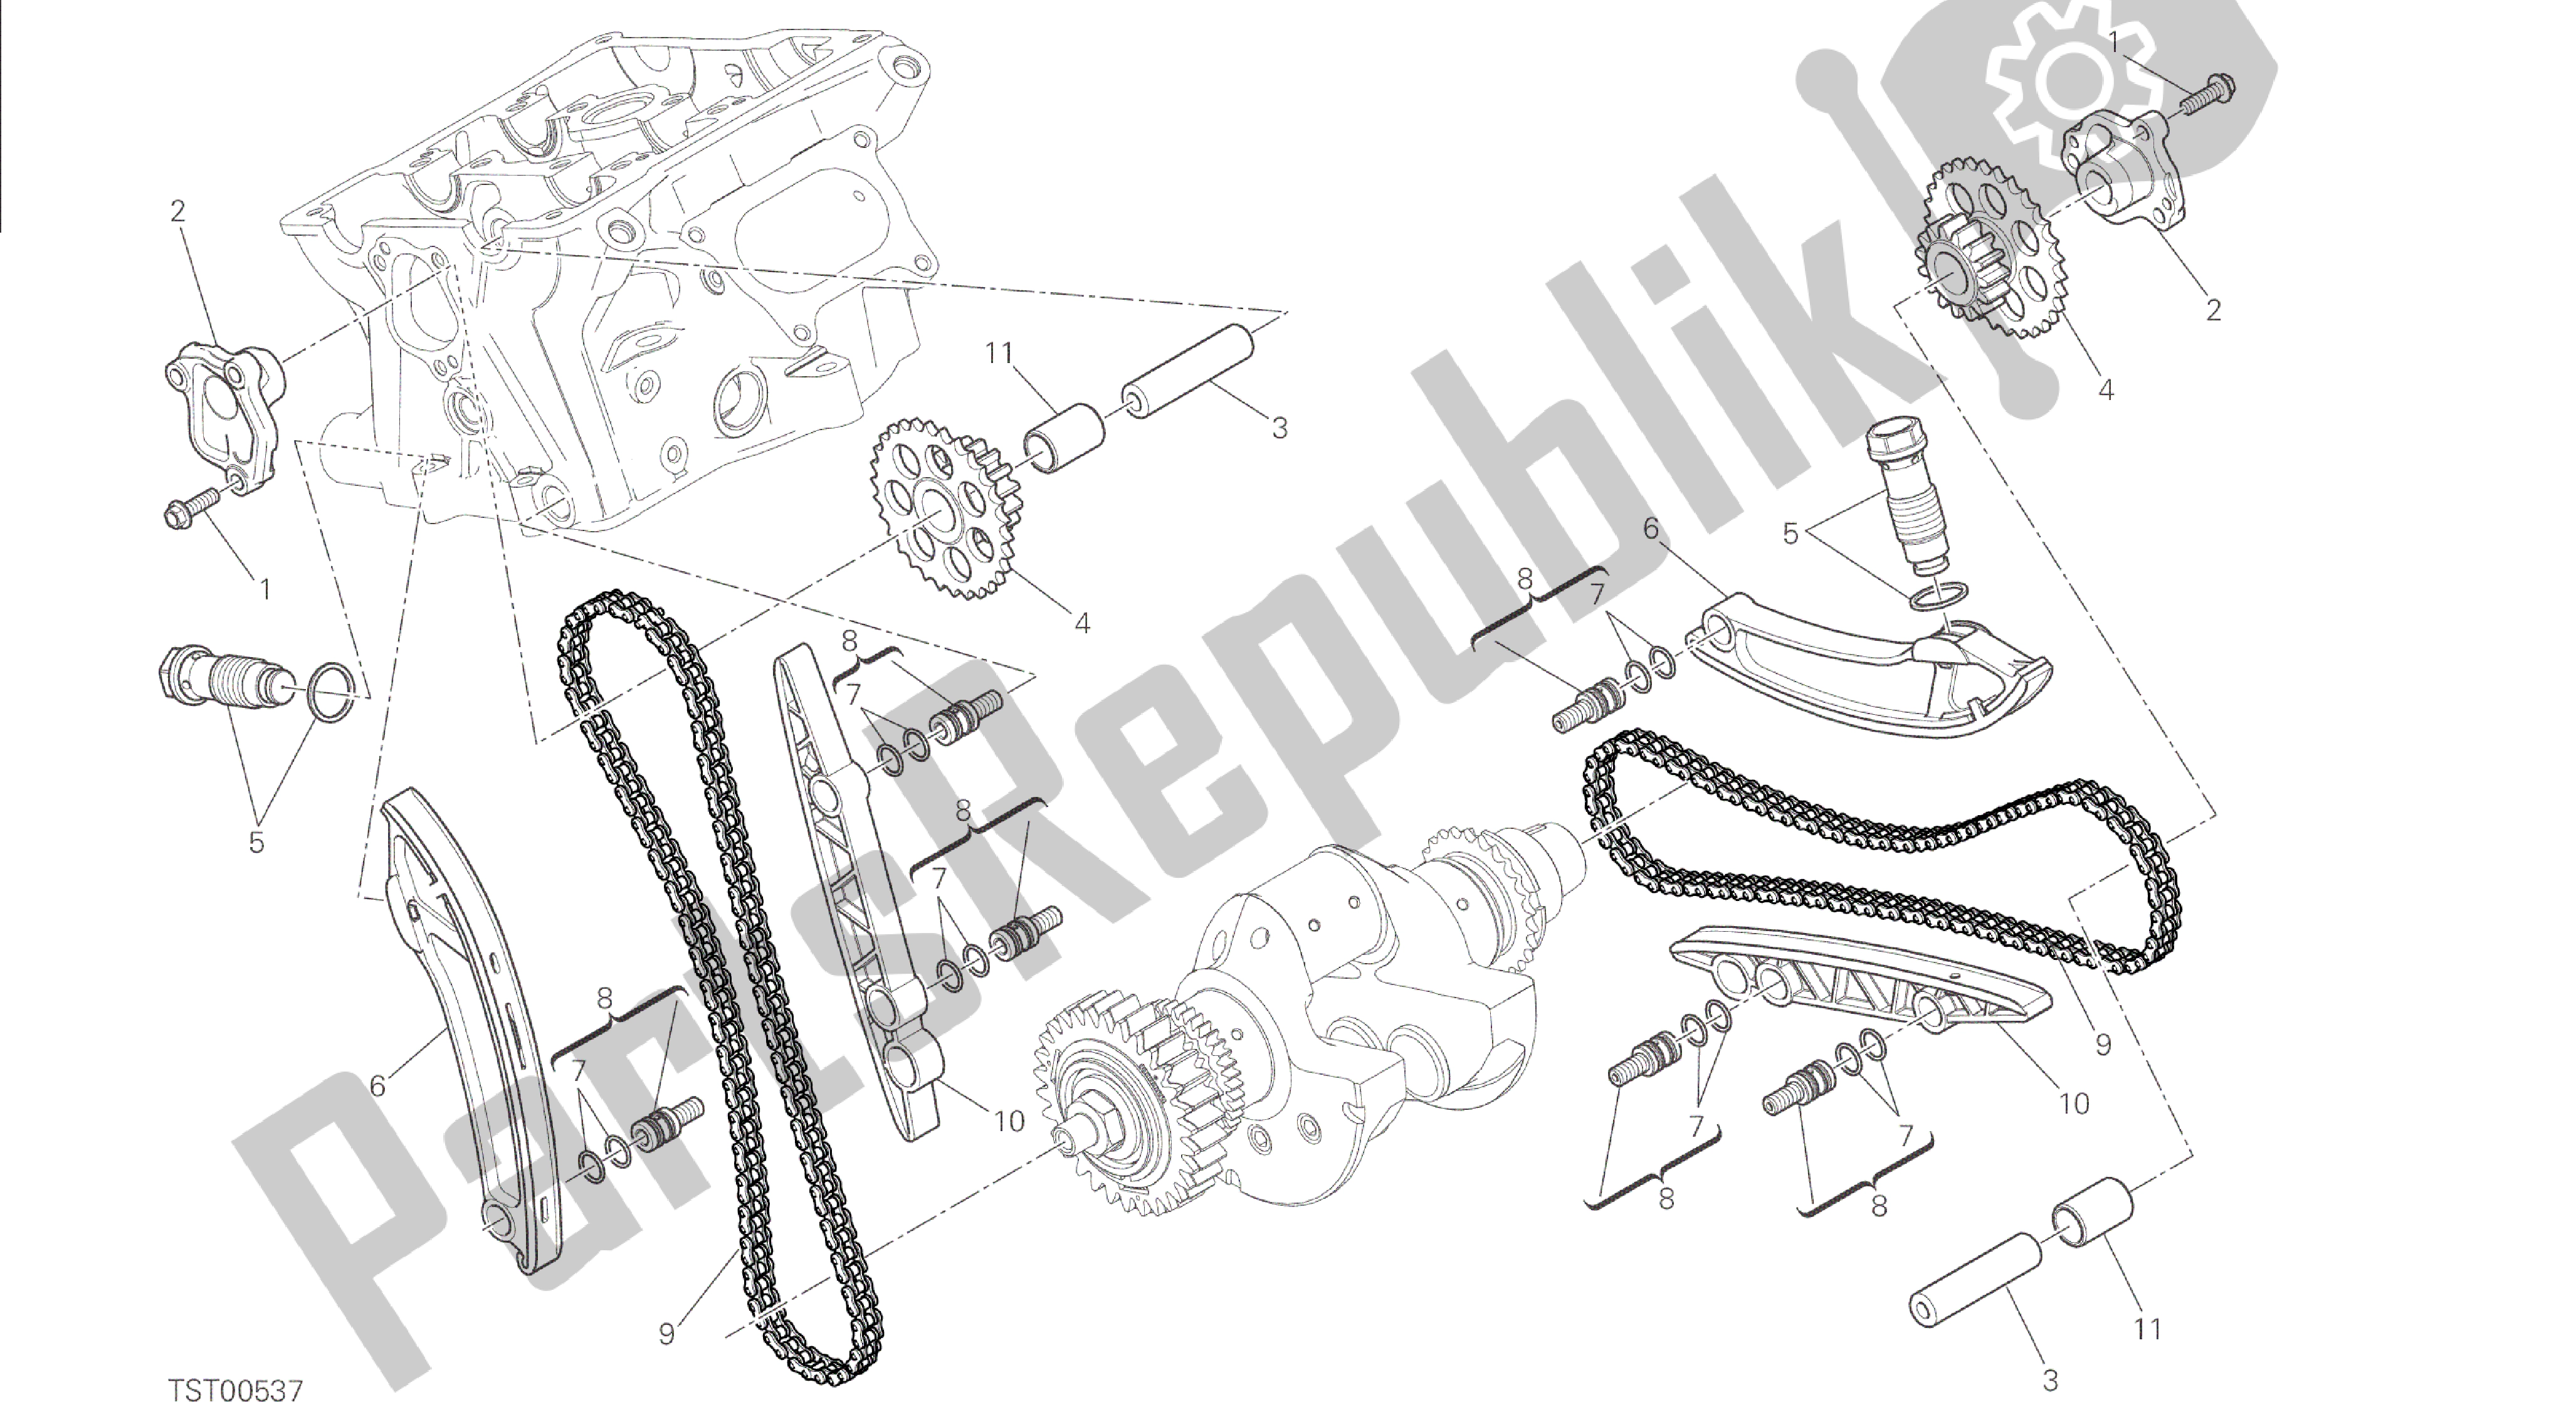 Todas las partes para Dibujo 008 - Motor De Grupo Distribuzione [mod: 1299; Xst: Aus, Eur, Fra, Jap, Twn] de Ducati Panigale 1299 2015